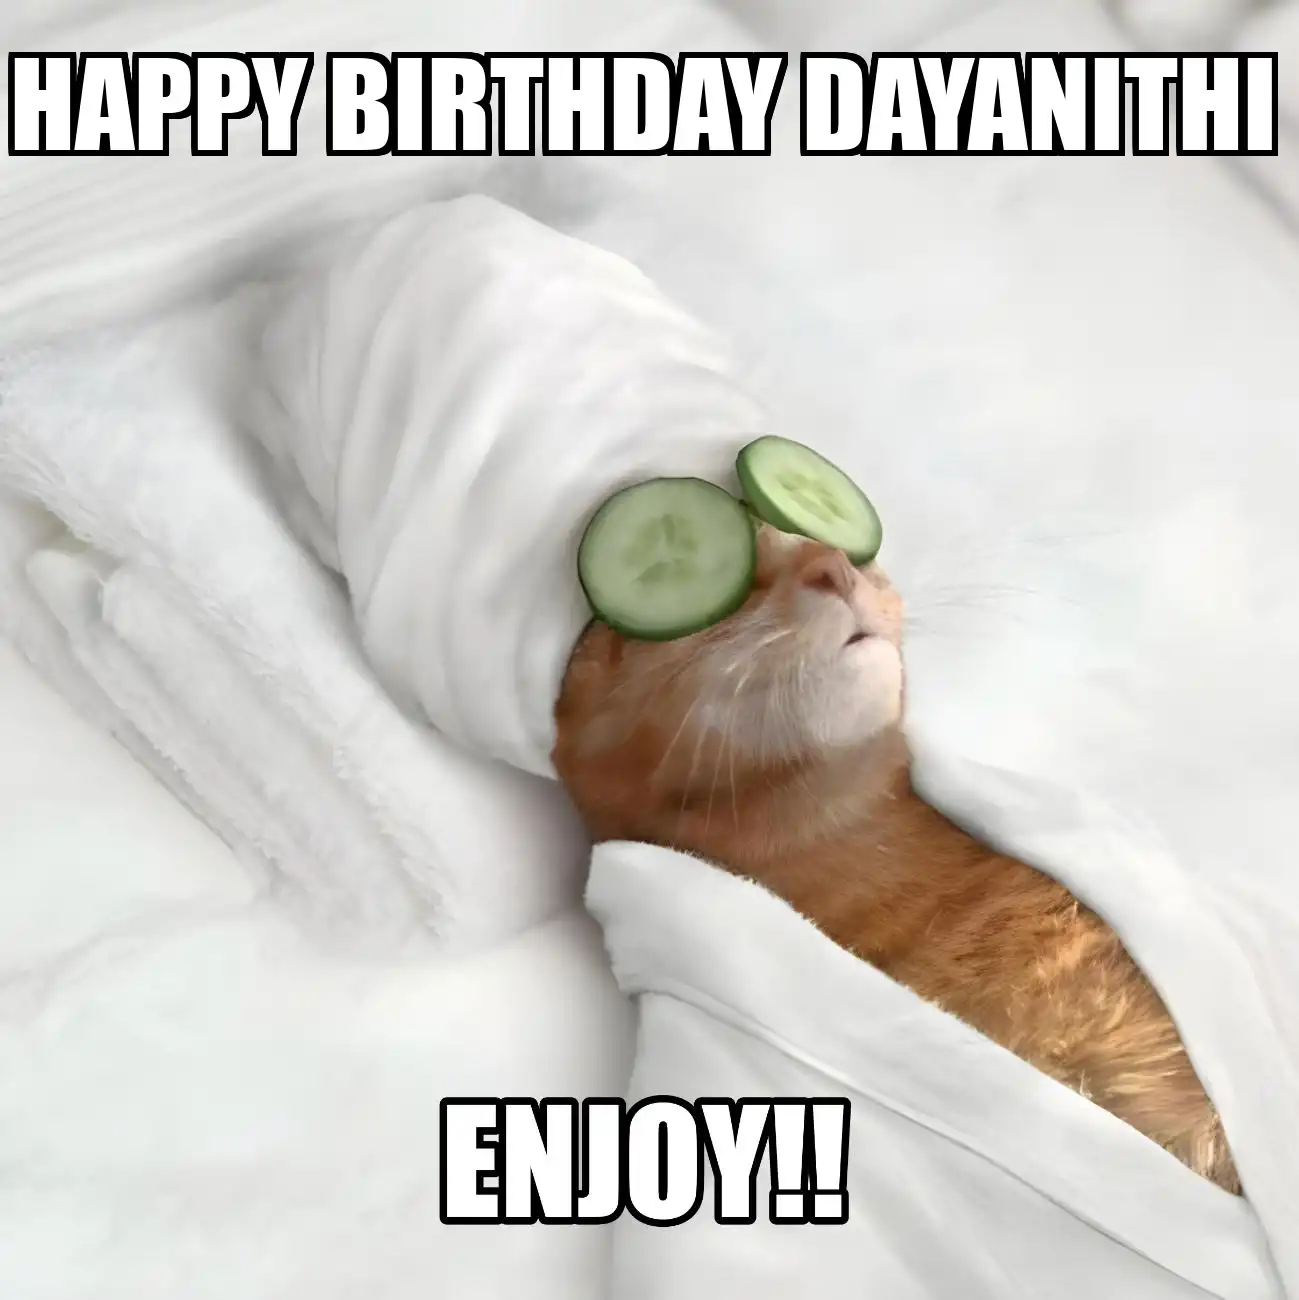 Happy Birthday Dayanithi Enjoy Cat Meme